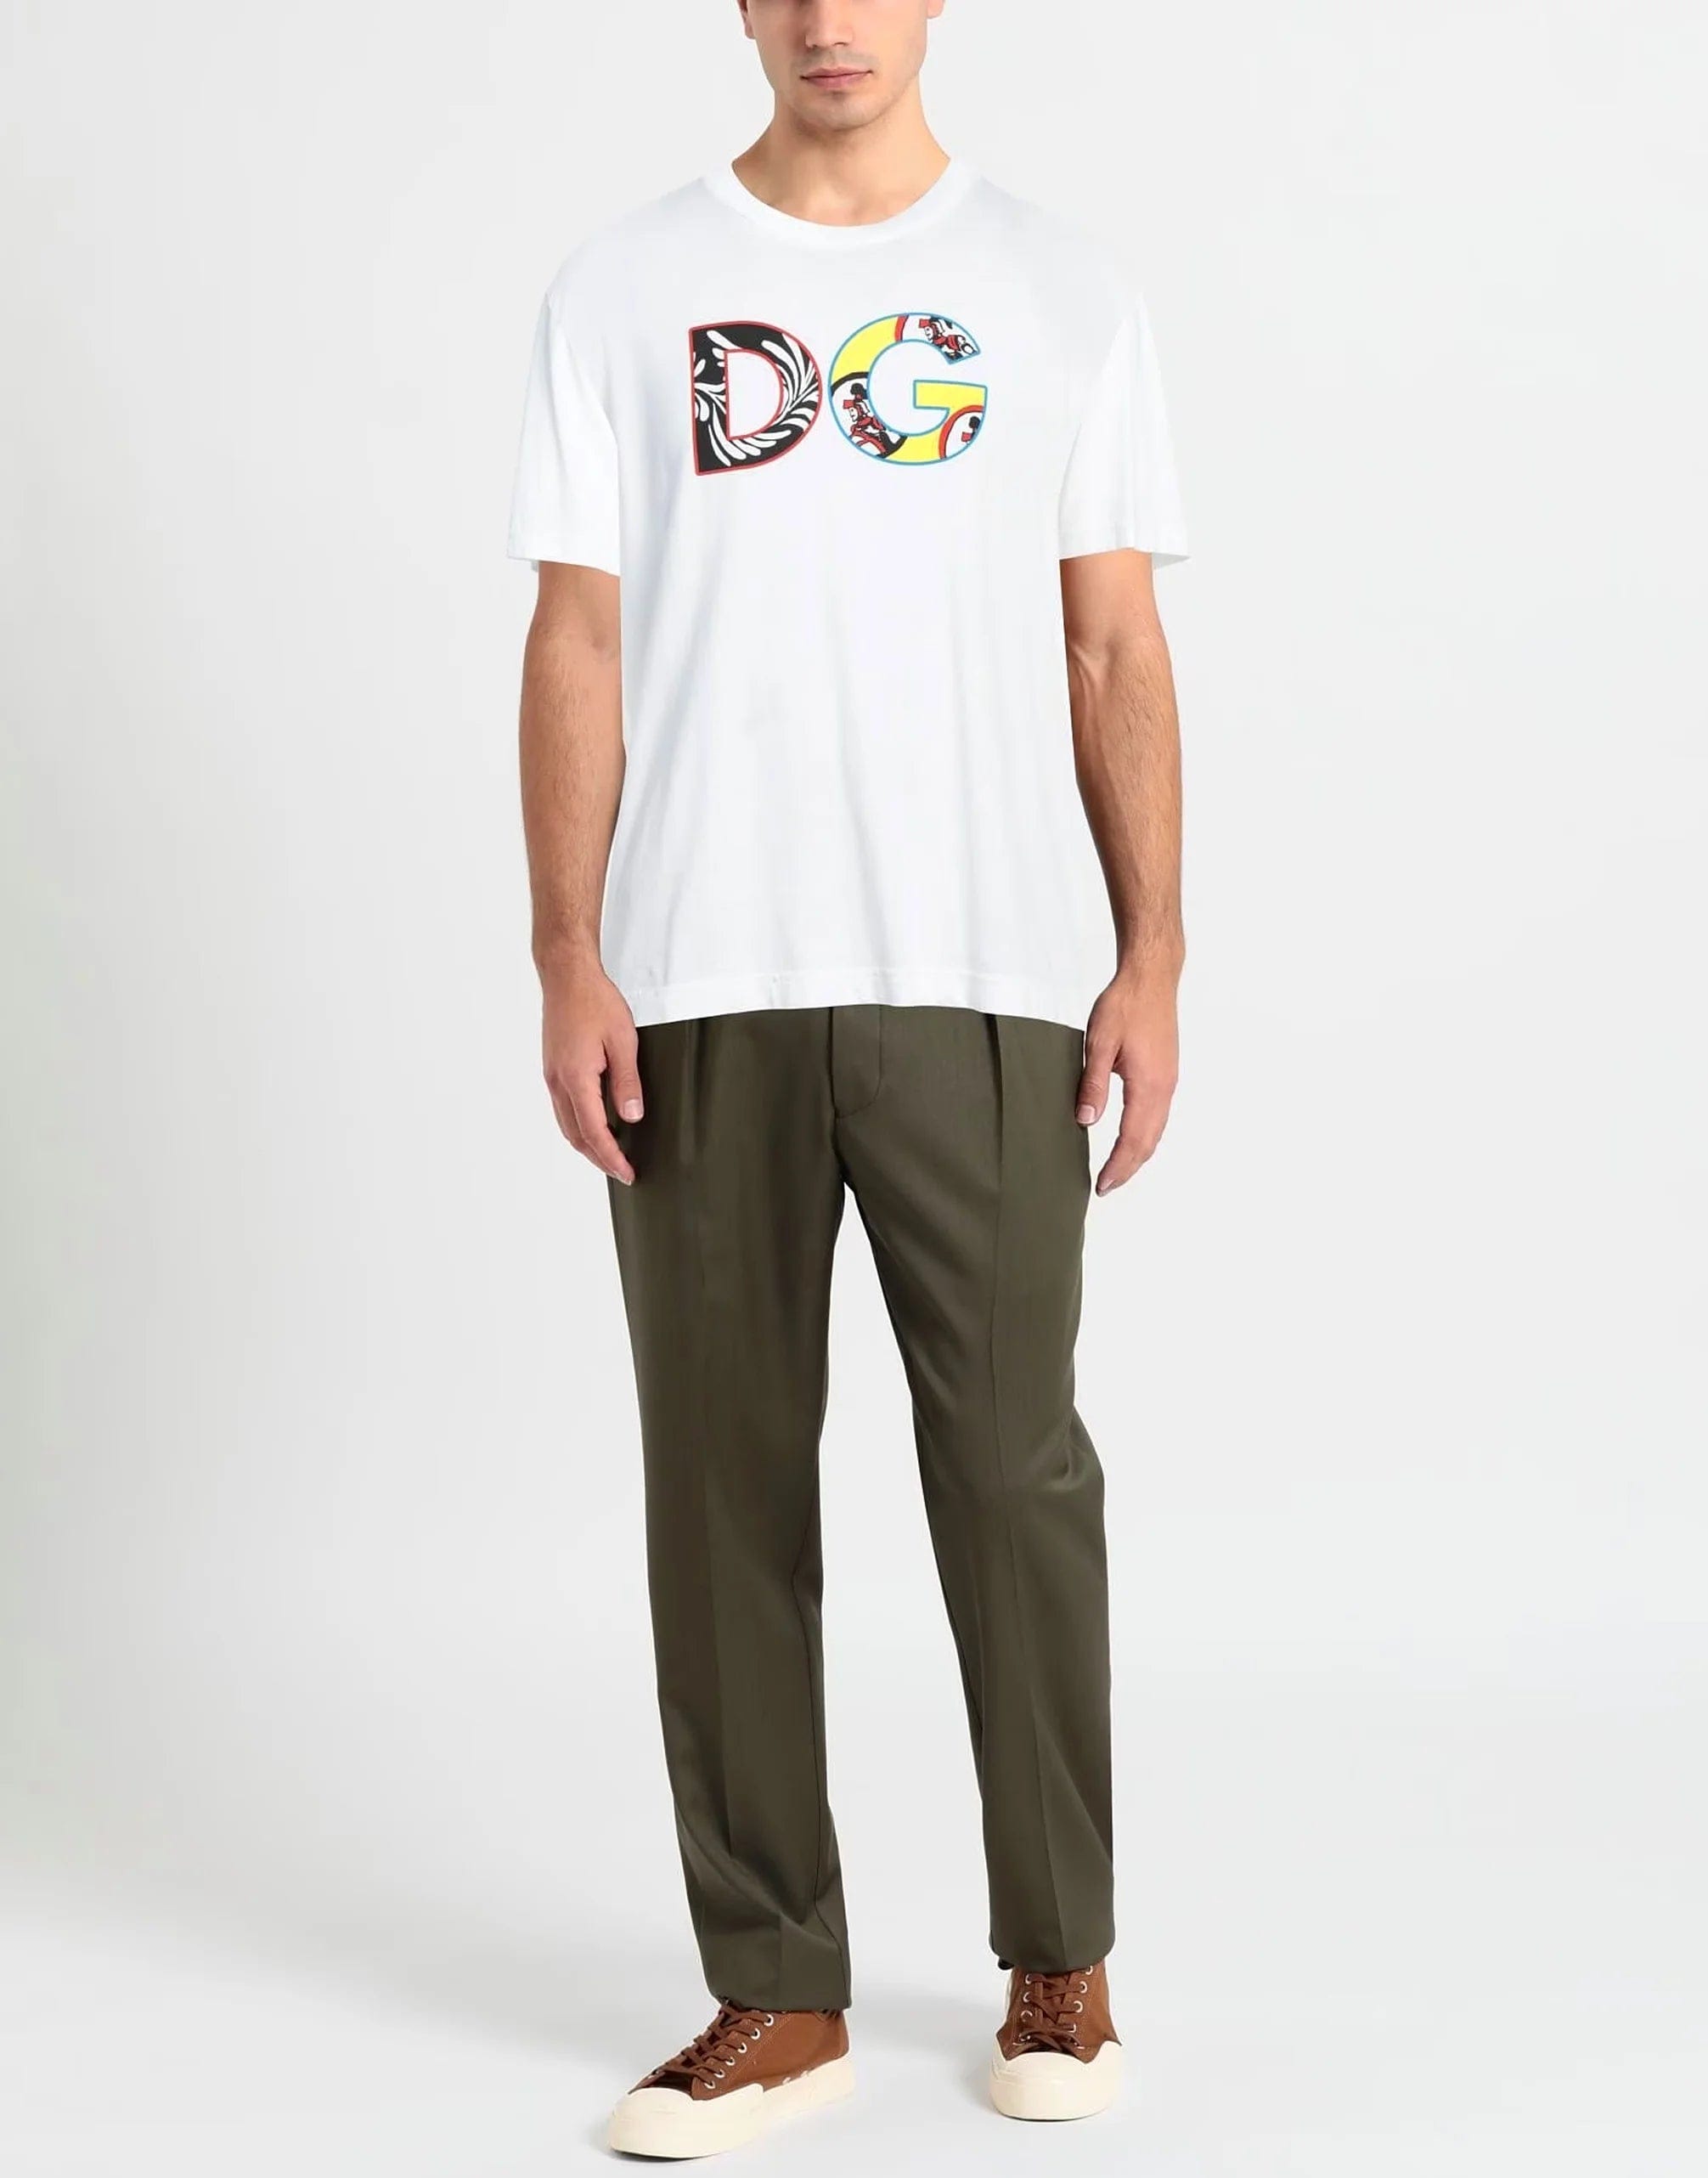 Dolce & Gabbana DG Carretto T-shirt